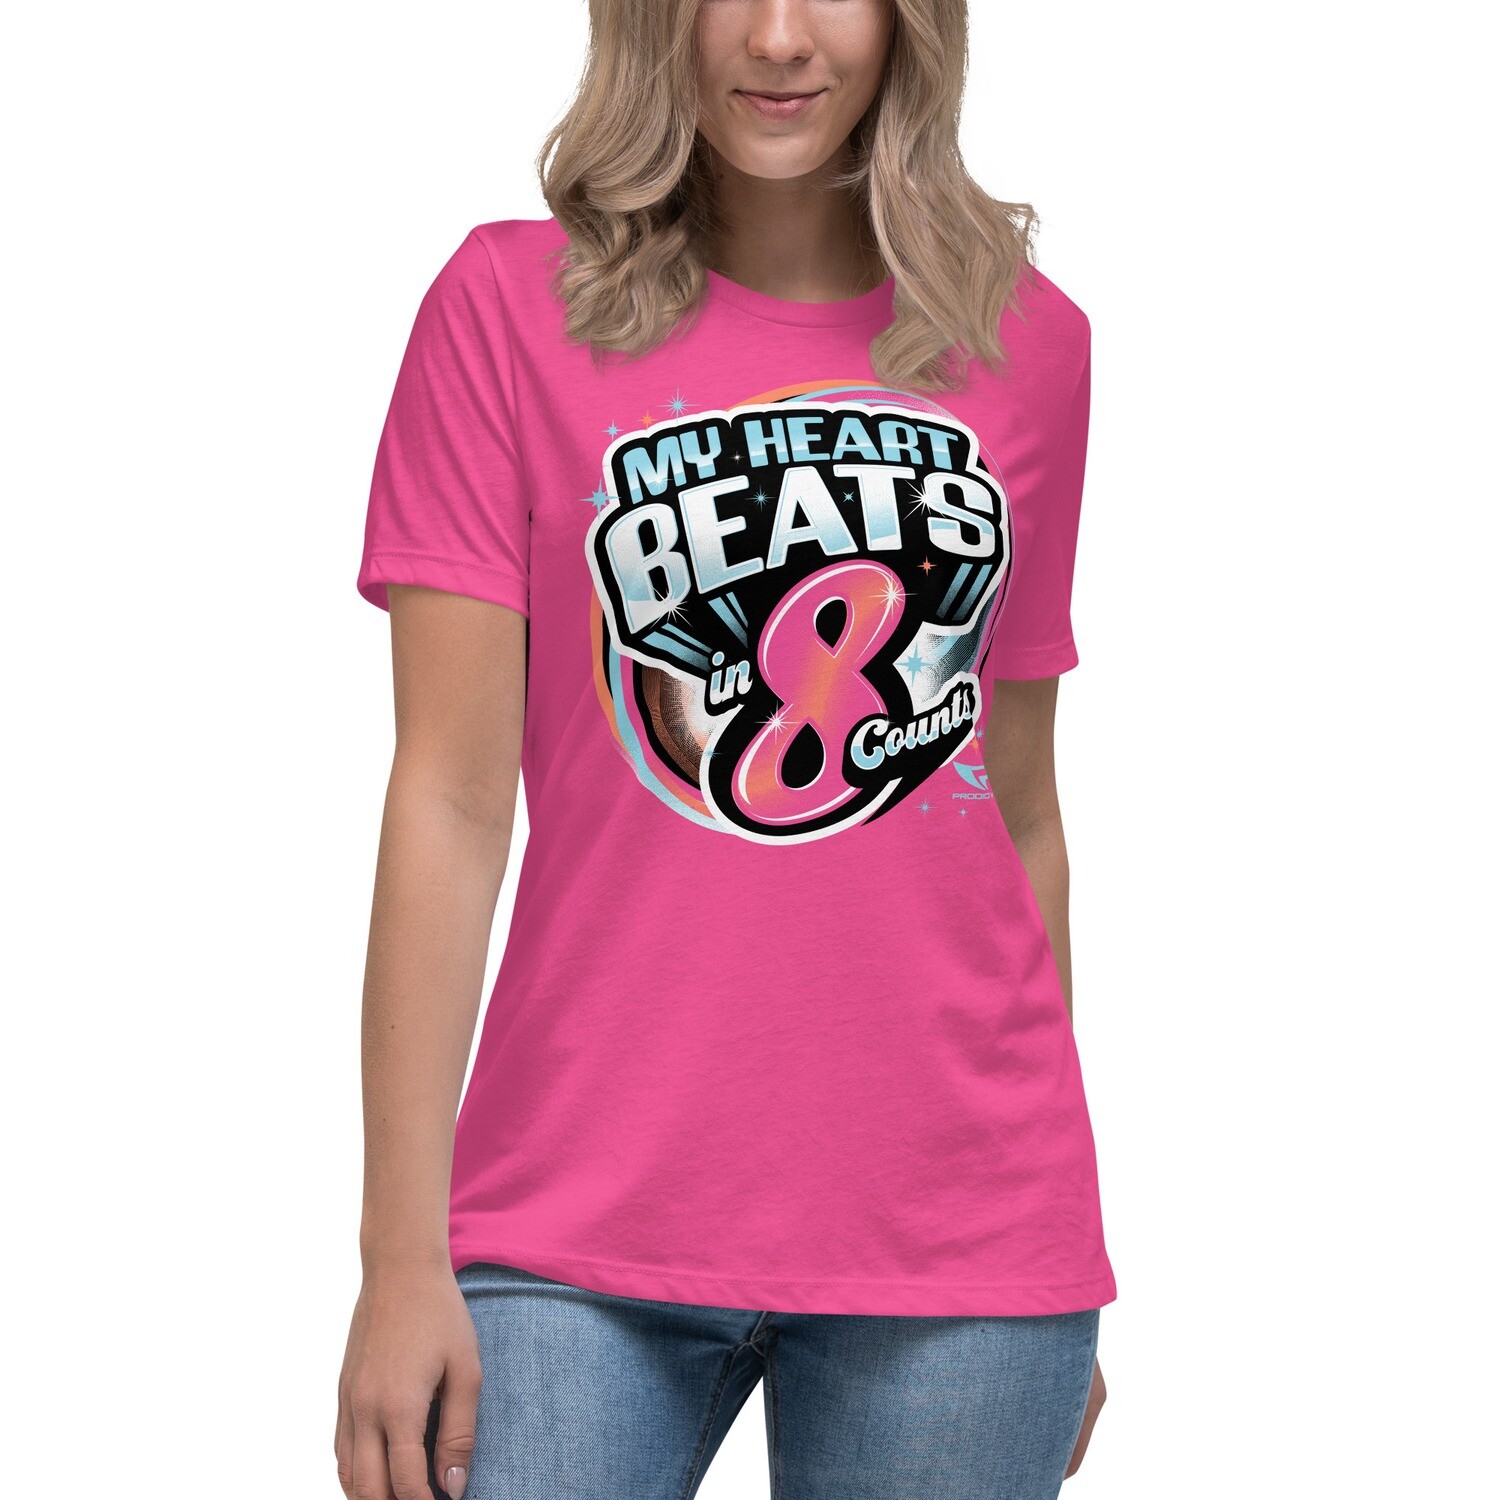 Women's Relaxed T-Shirt (8 Count Heart)